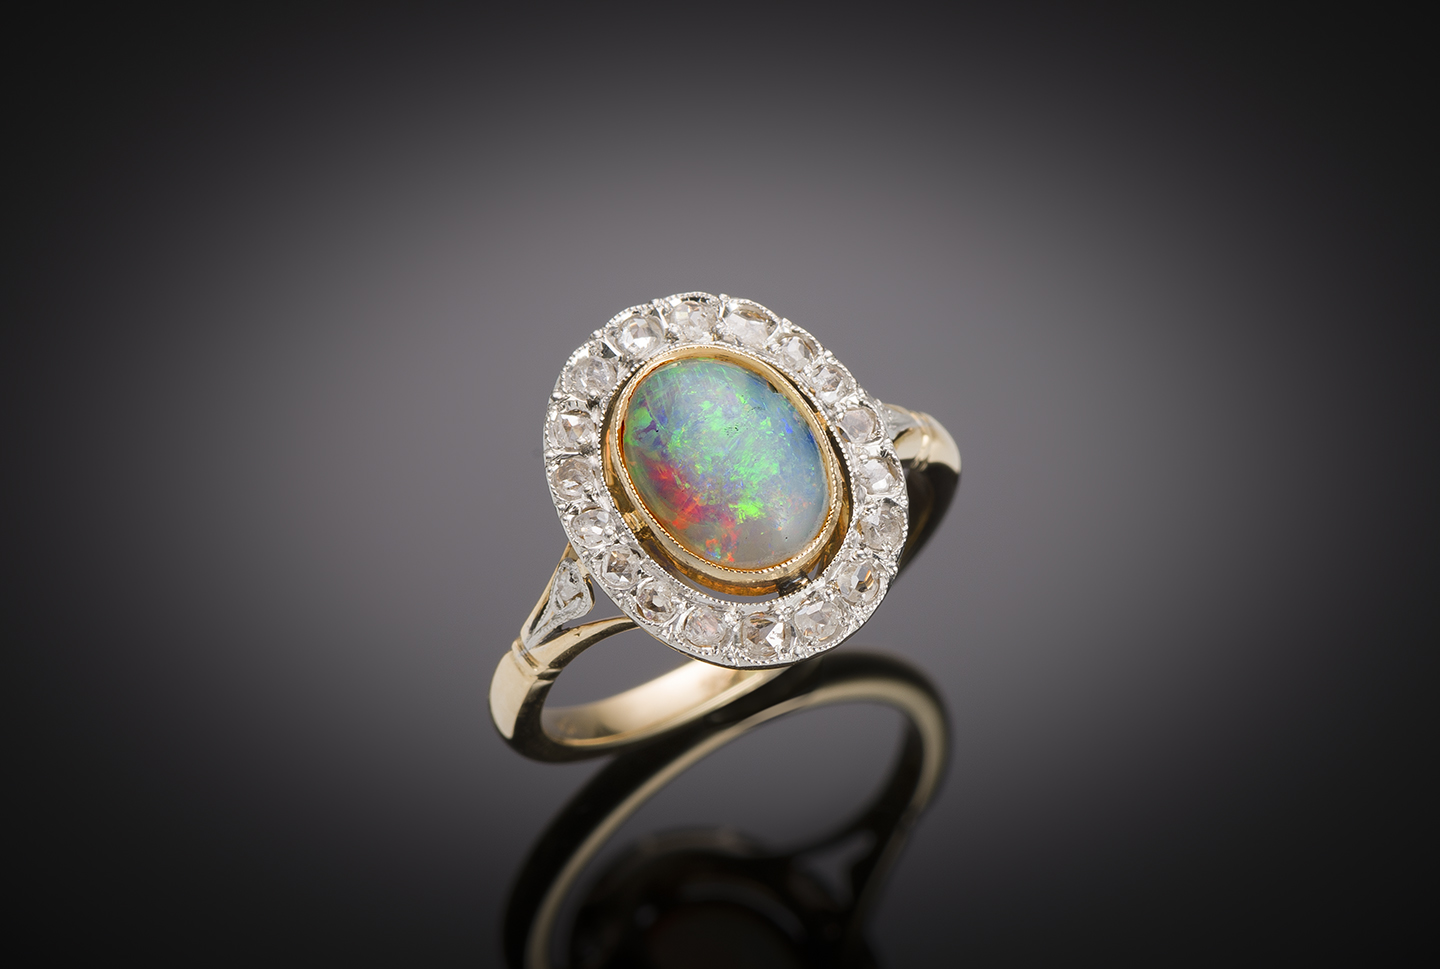 Bague opale diamants fin XIXe siècle. Travail français, poinçon tête de cheval (1838 – 1919).-1